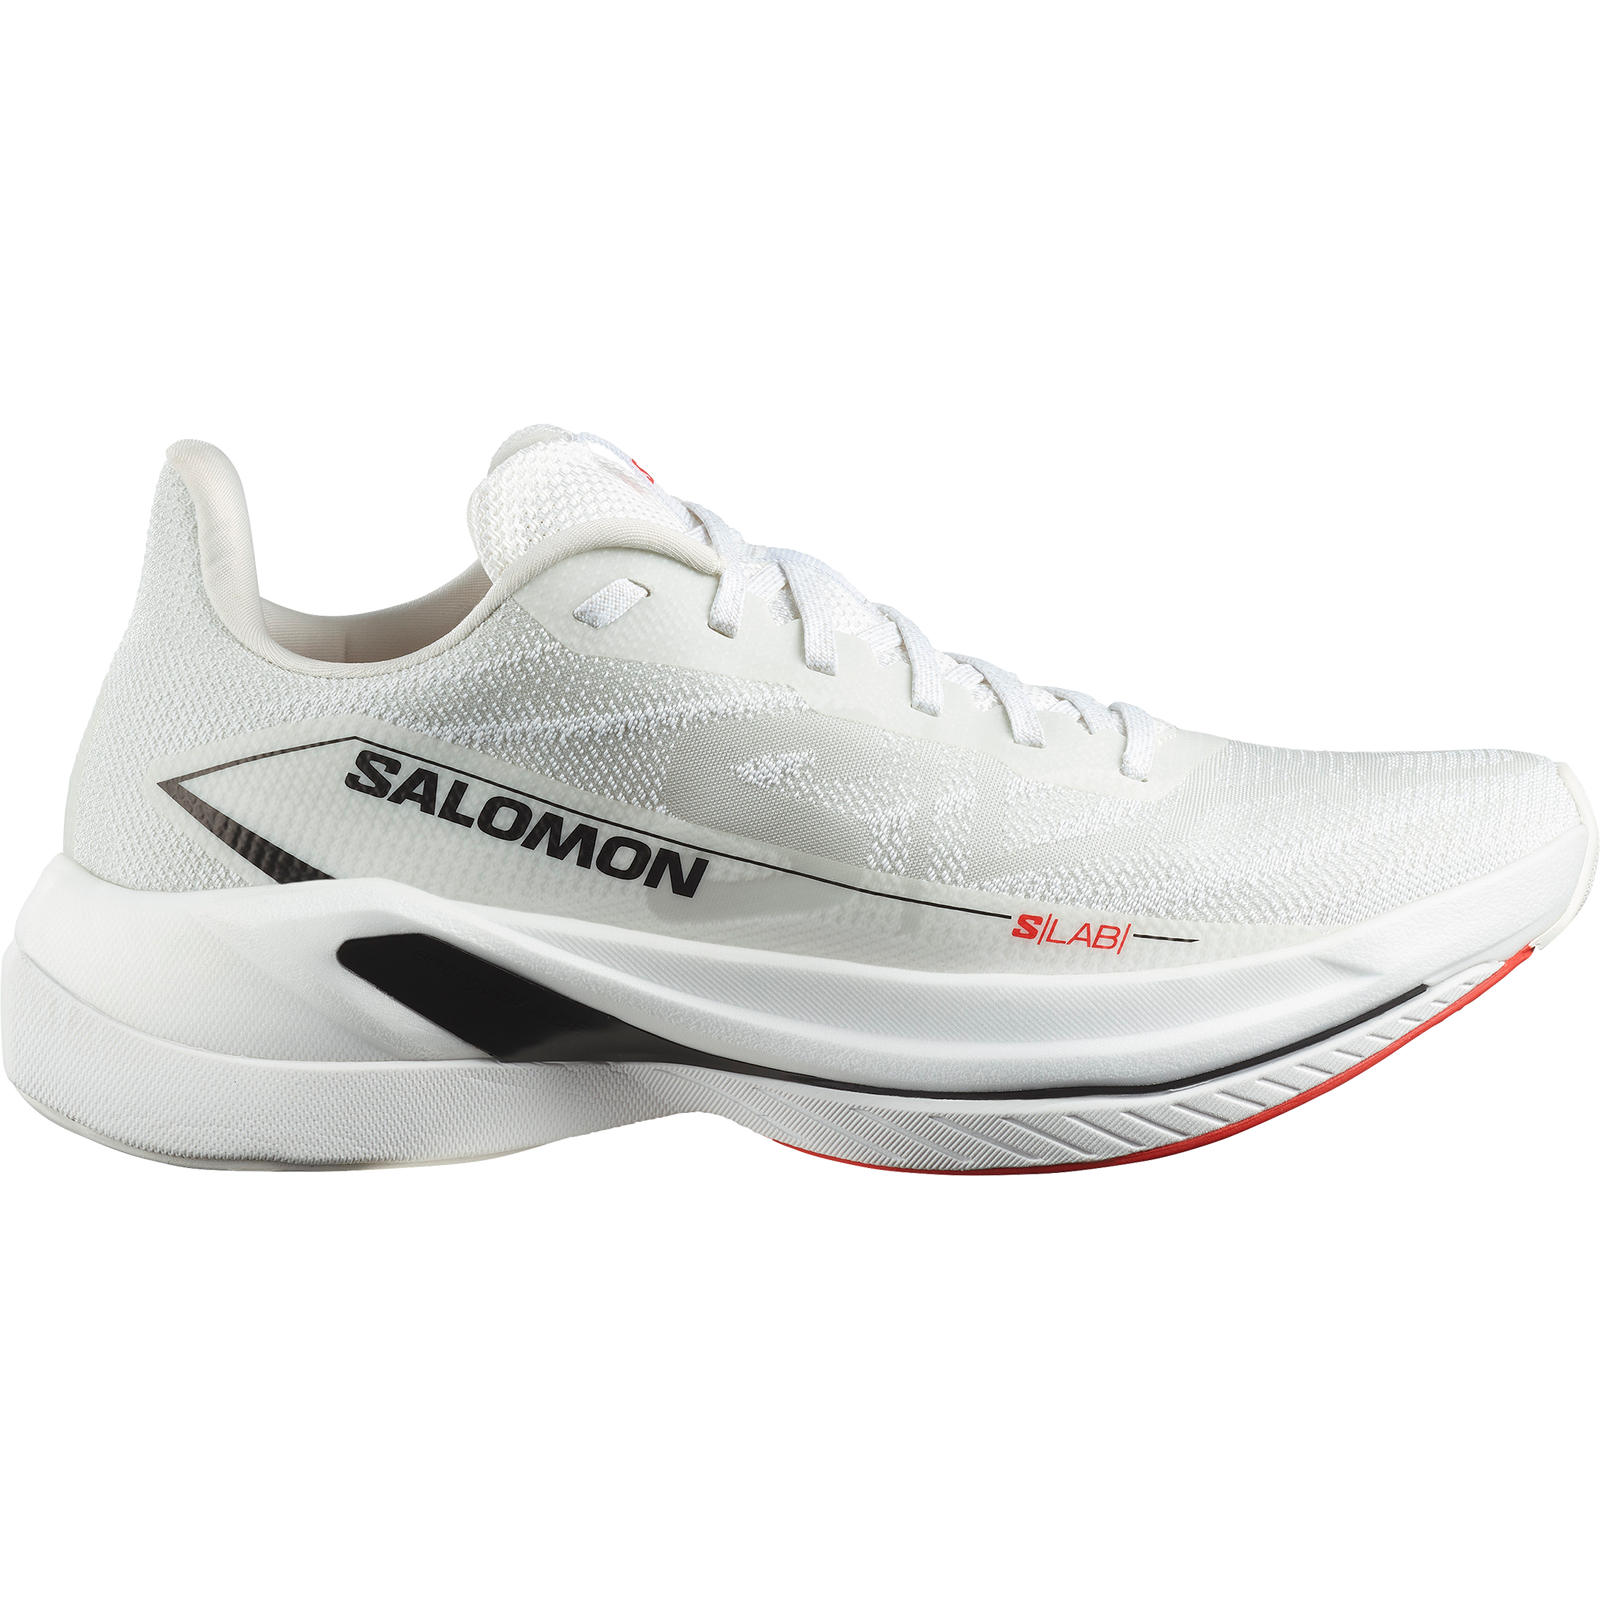 Salomon S/LAB Spectur unisex hardloopschoenen voor op de weg